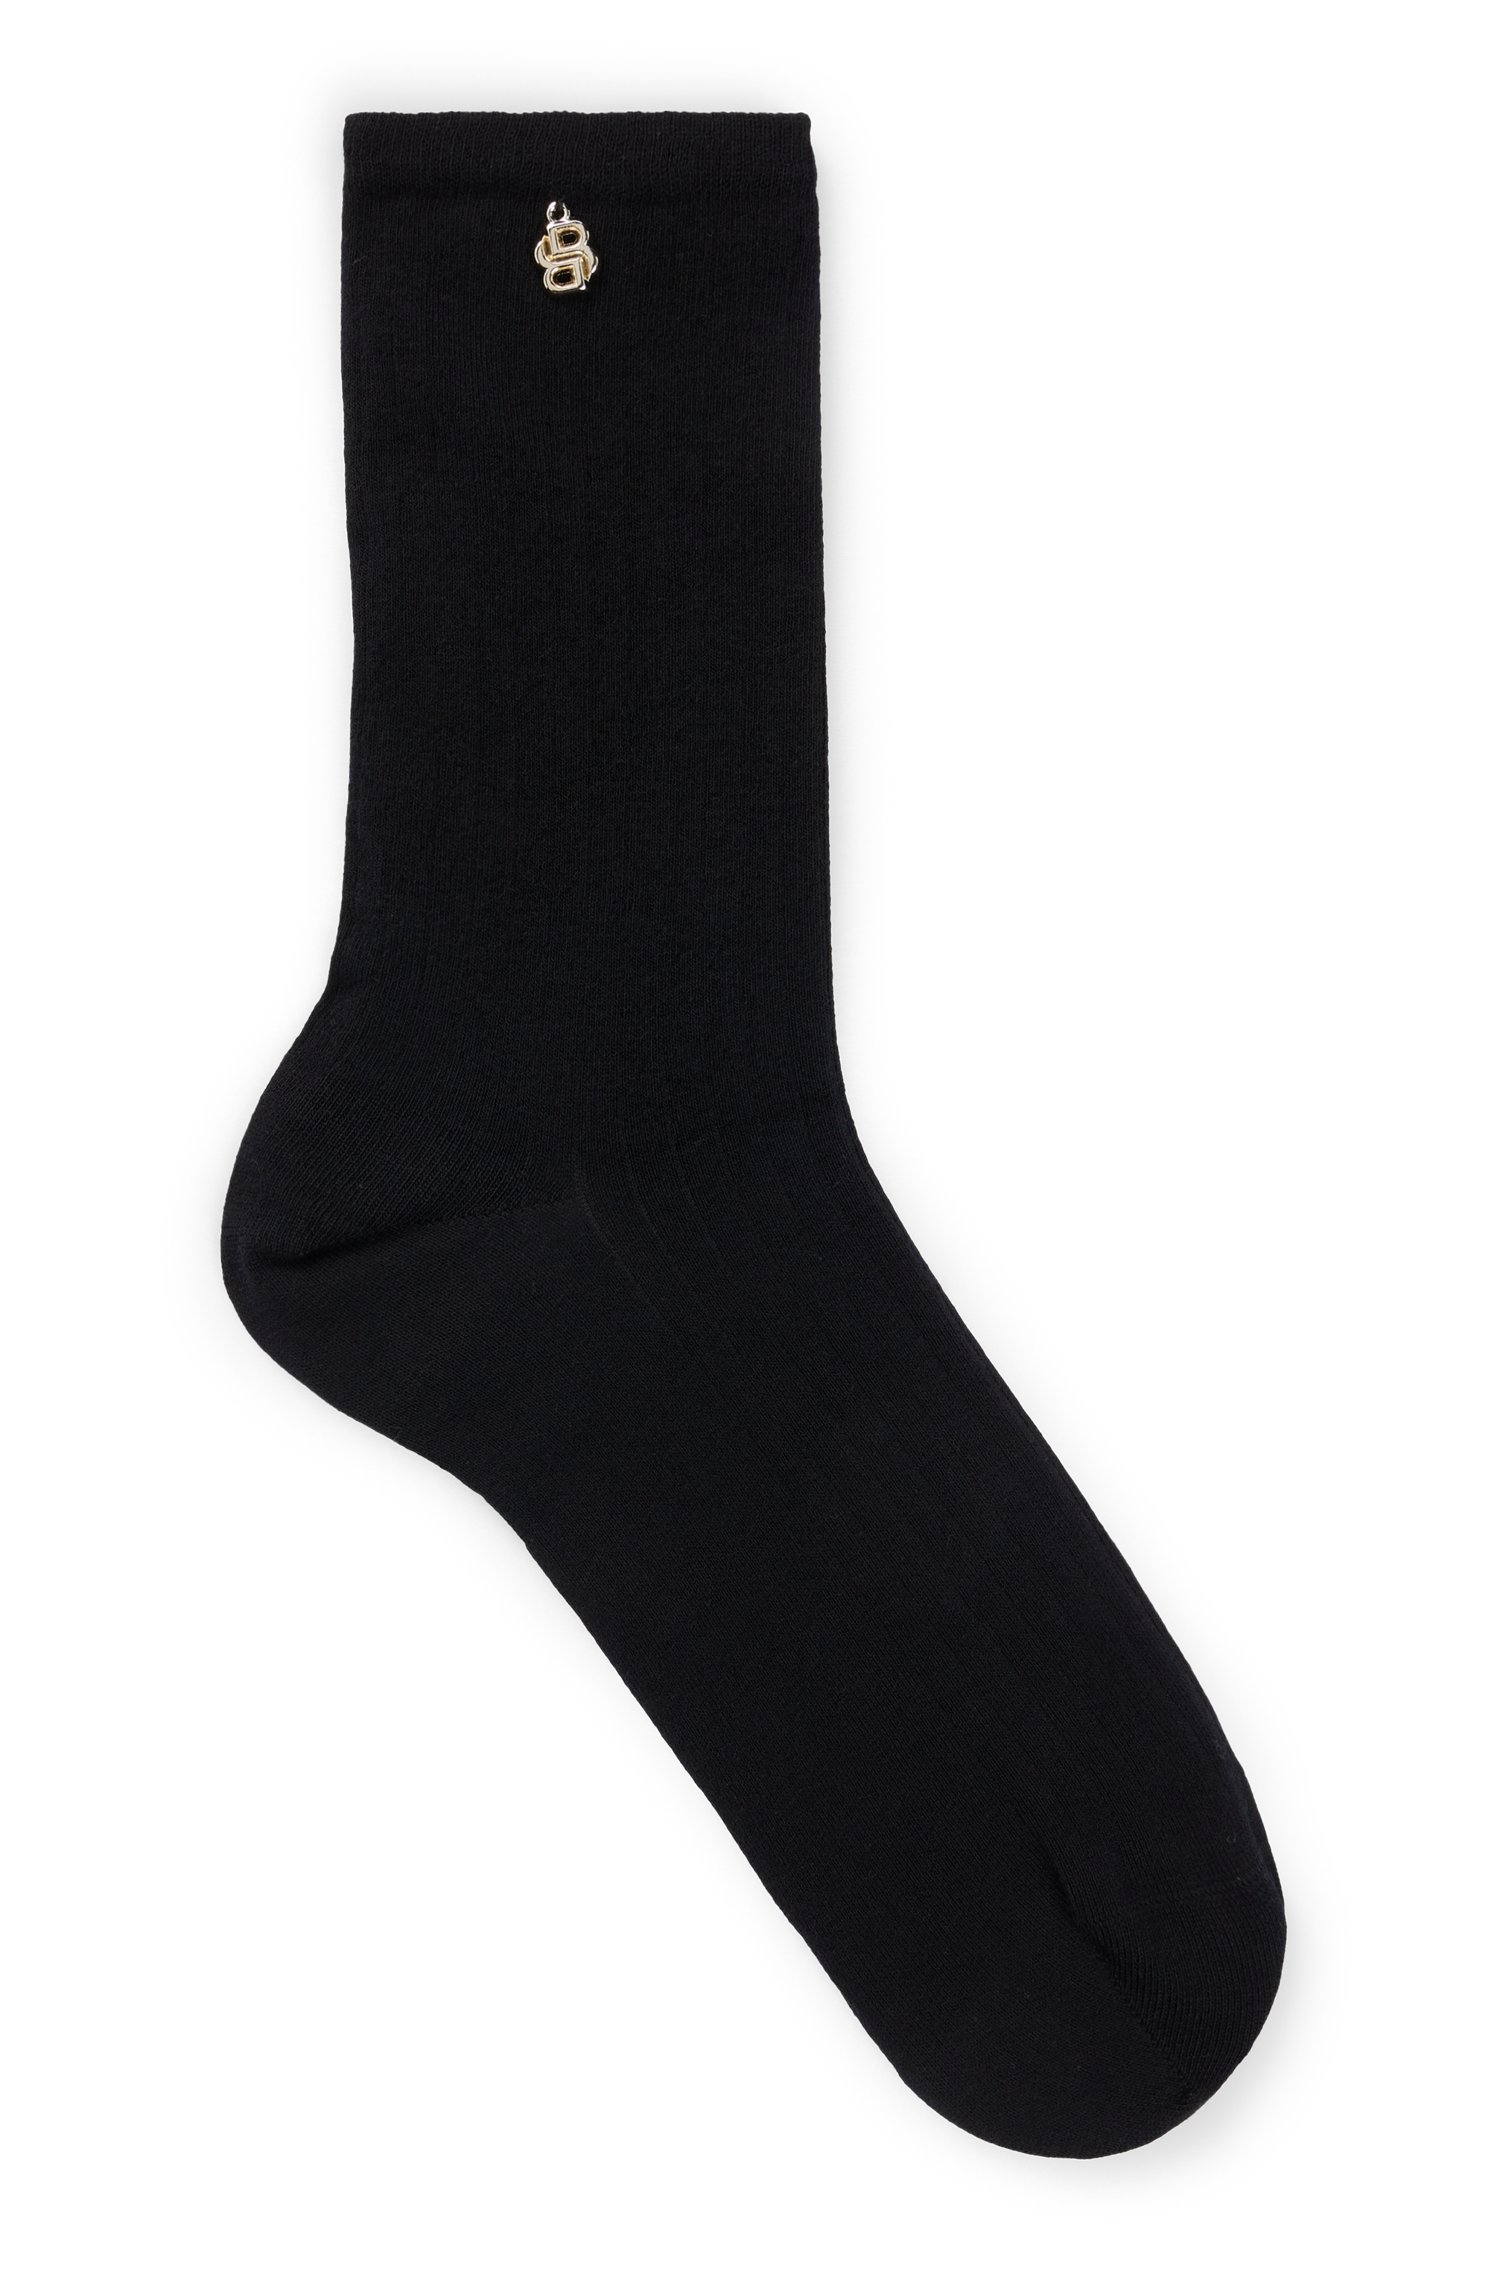 Regular-length socks with metallic double monogram